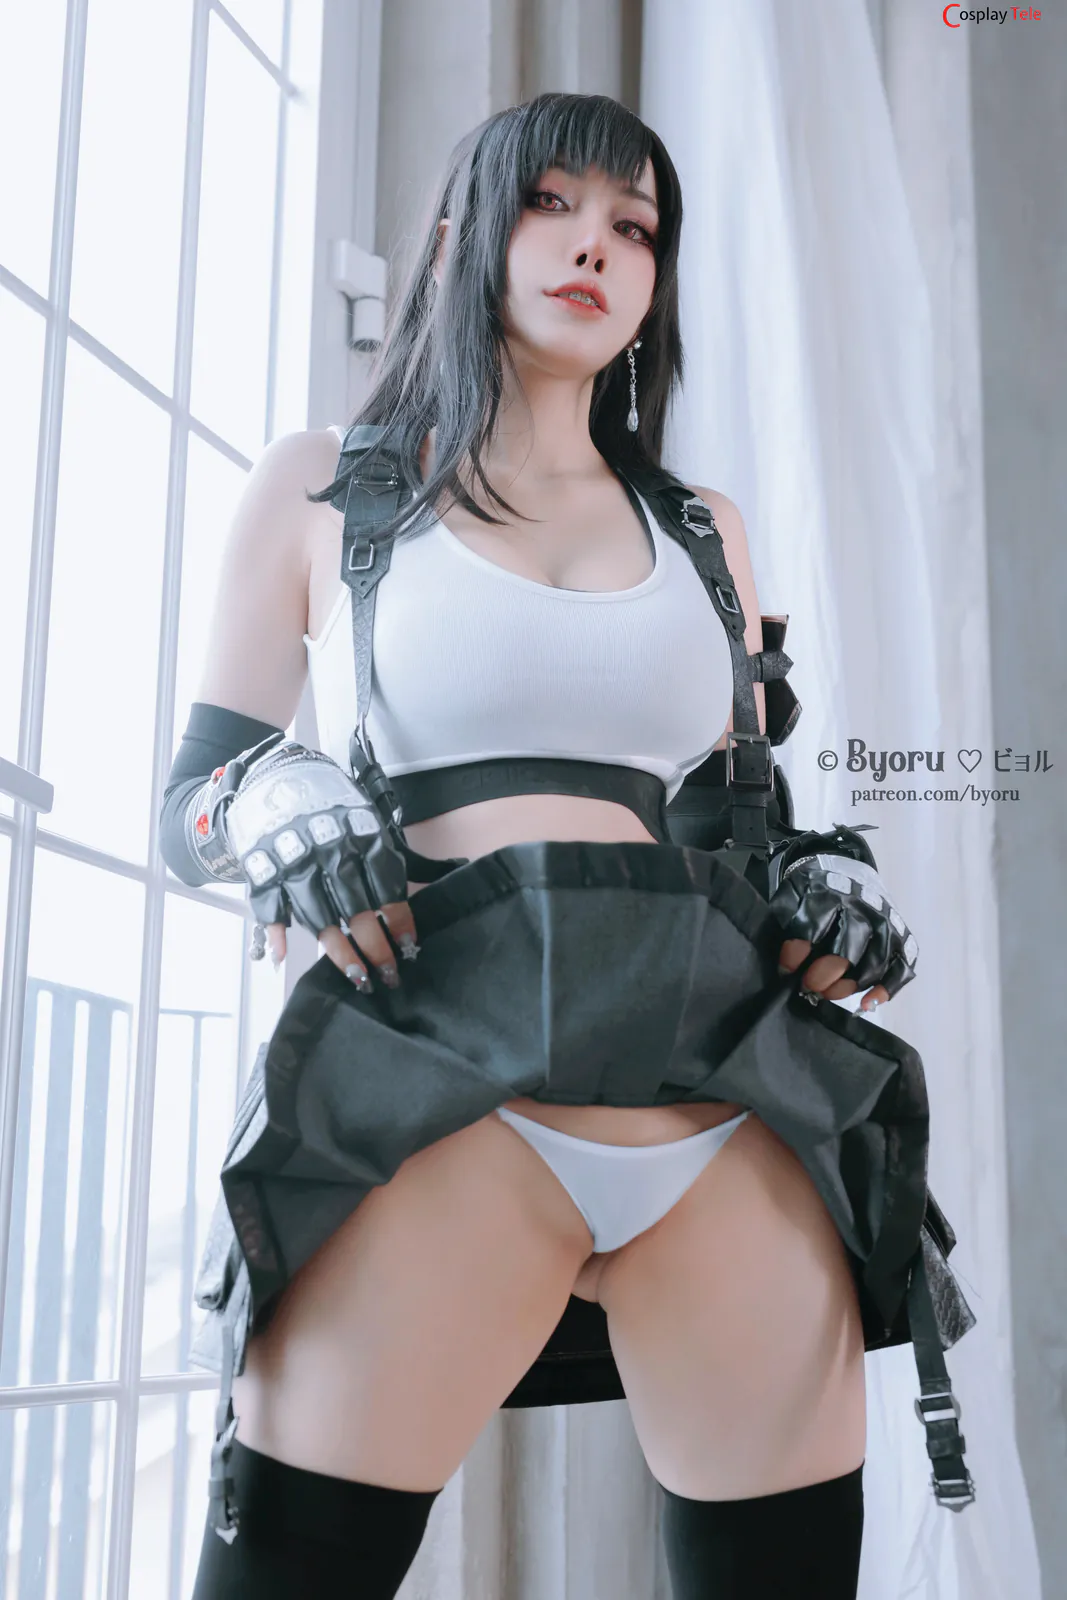 Byoru (ビョル) cosplay Tifa Lockhart – Final Fantasy – Part 3 “86 photos and 7 videos” 318